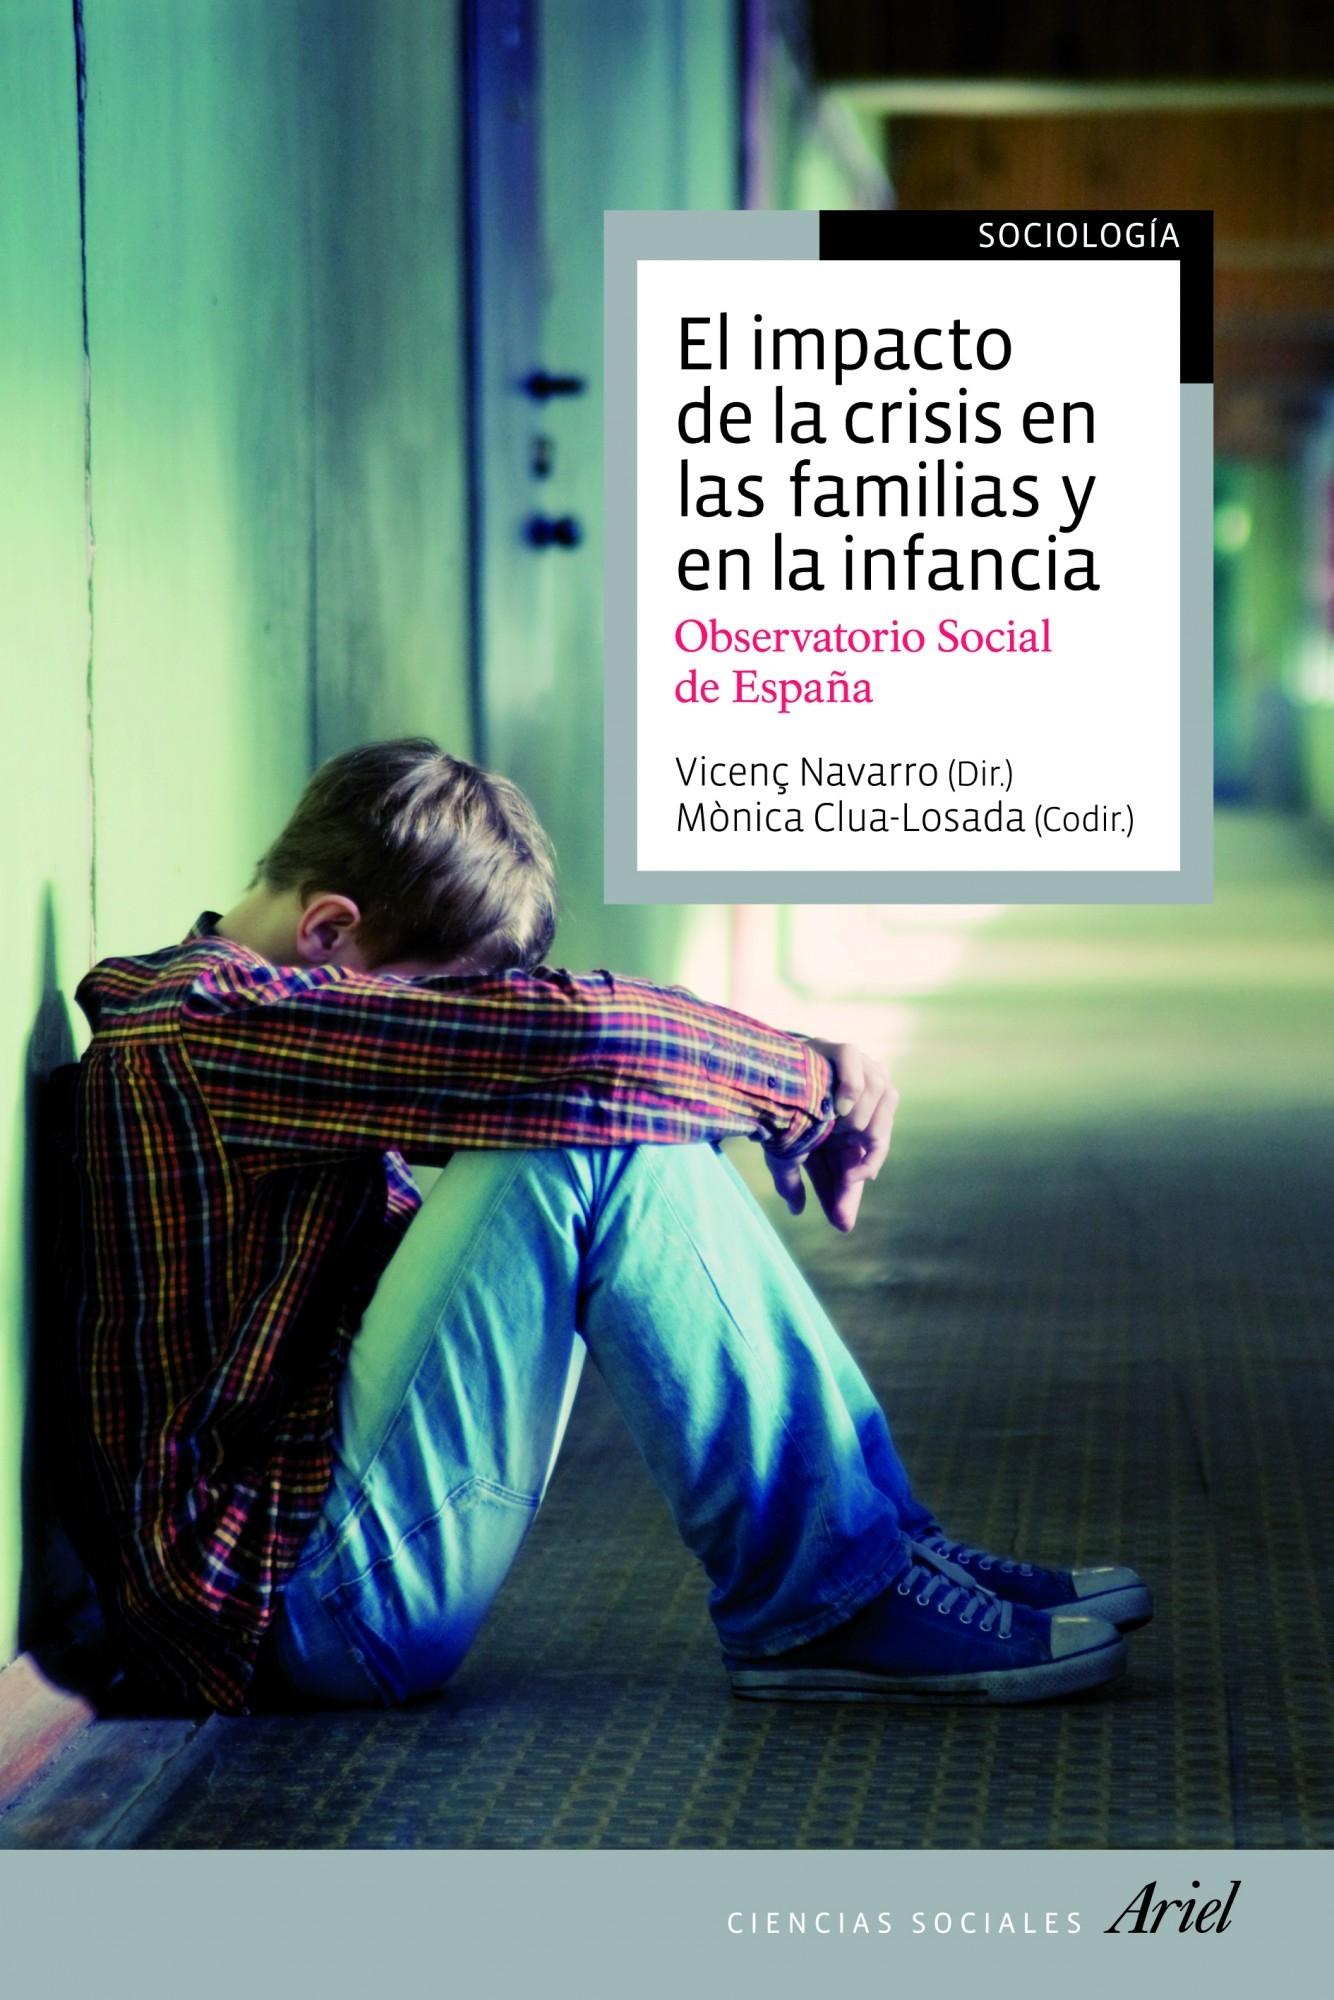 El Impacto de la Crisis en las Familias y en la Infancia "Observatorio Social de España"